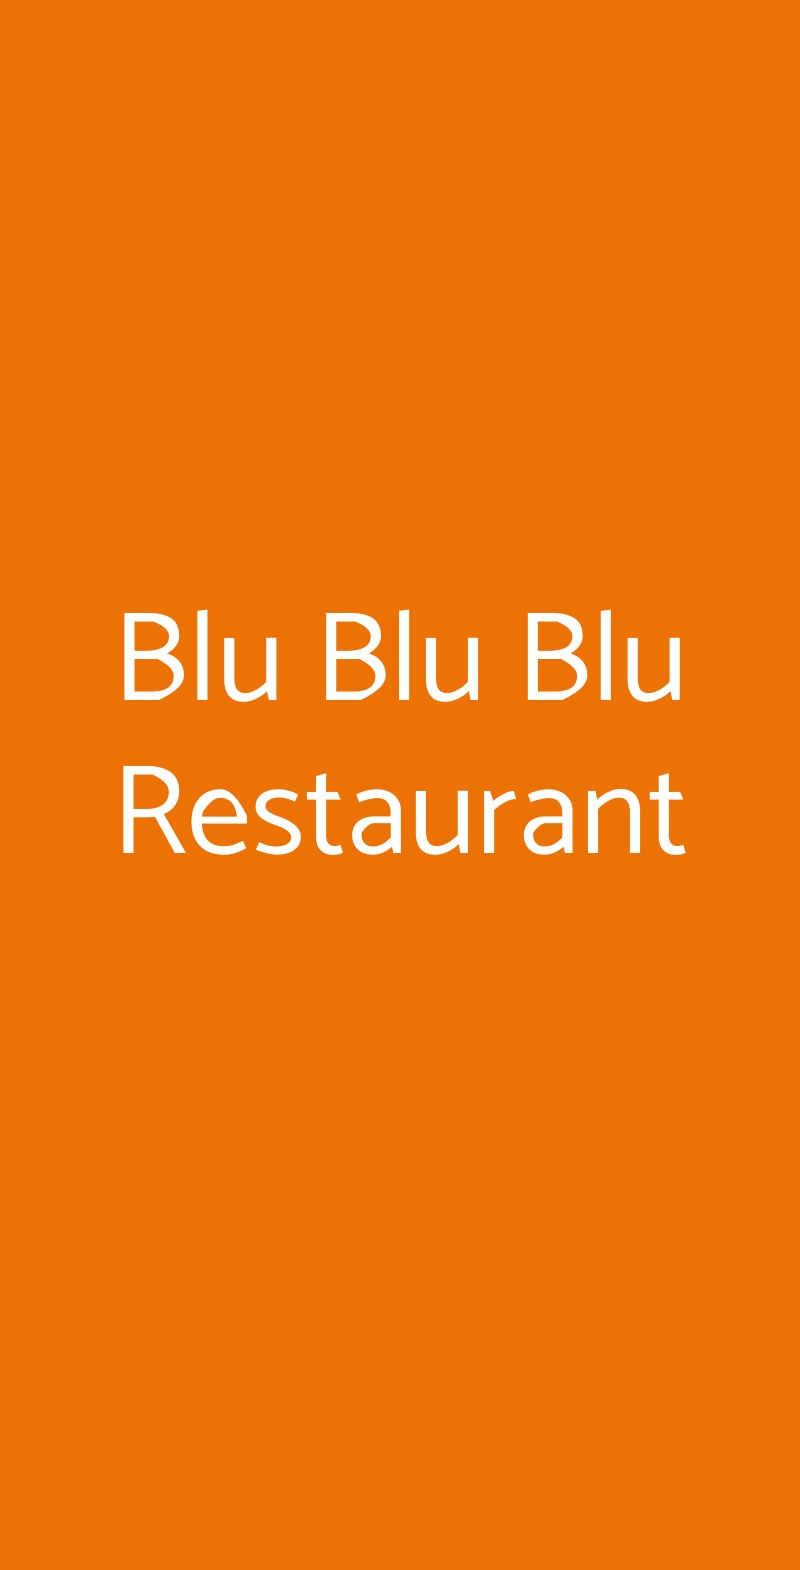 Blu Blu Blu Restaurant Milano menù 1 pagina